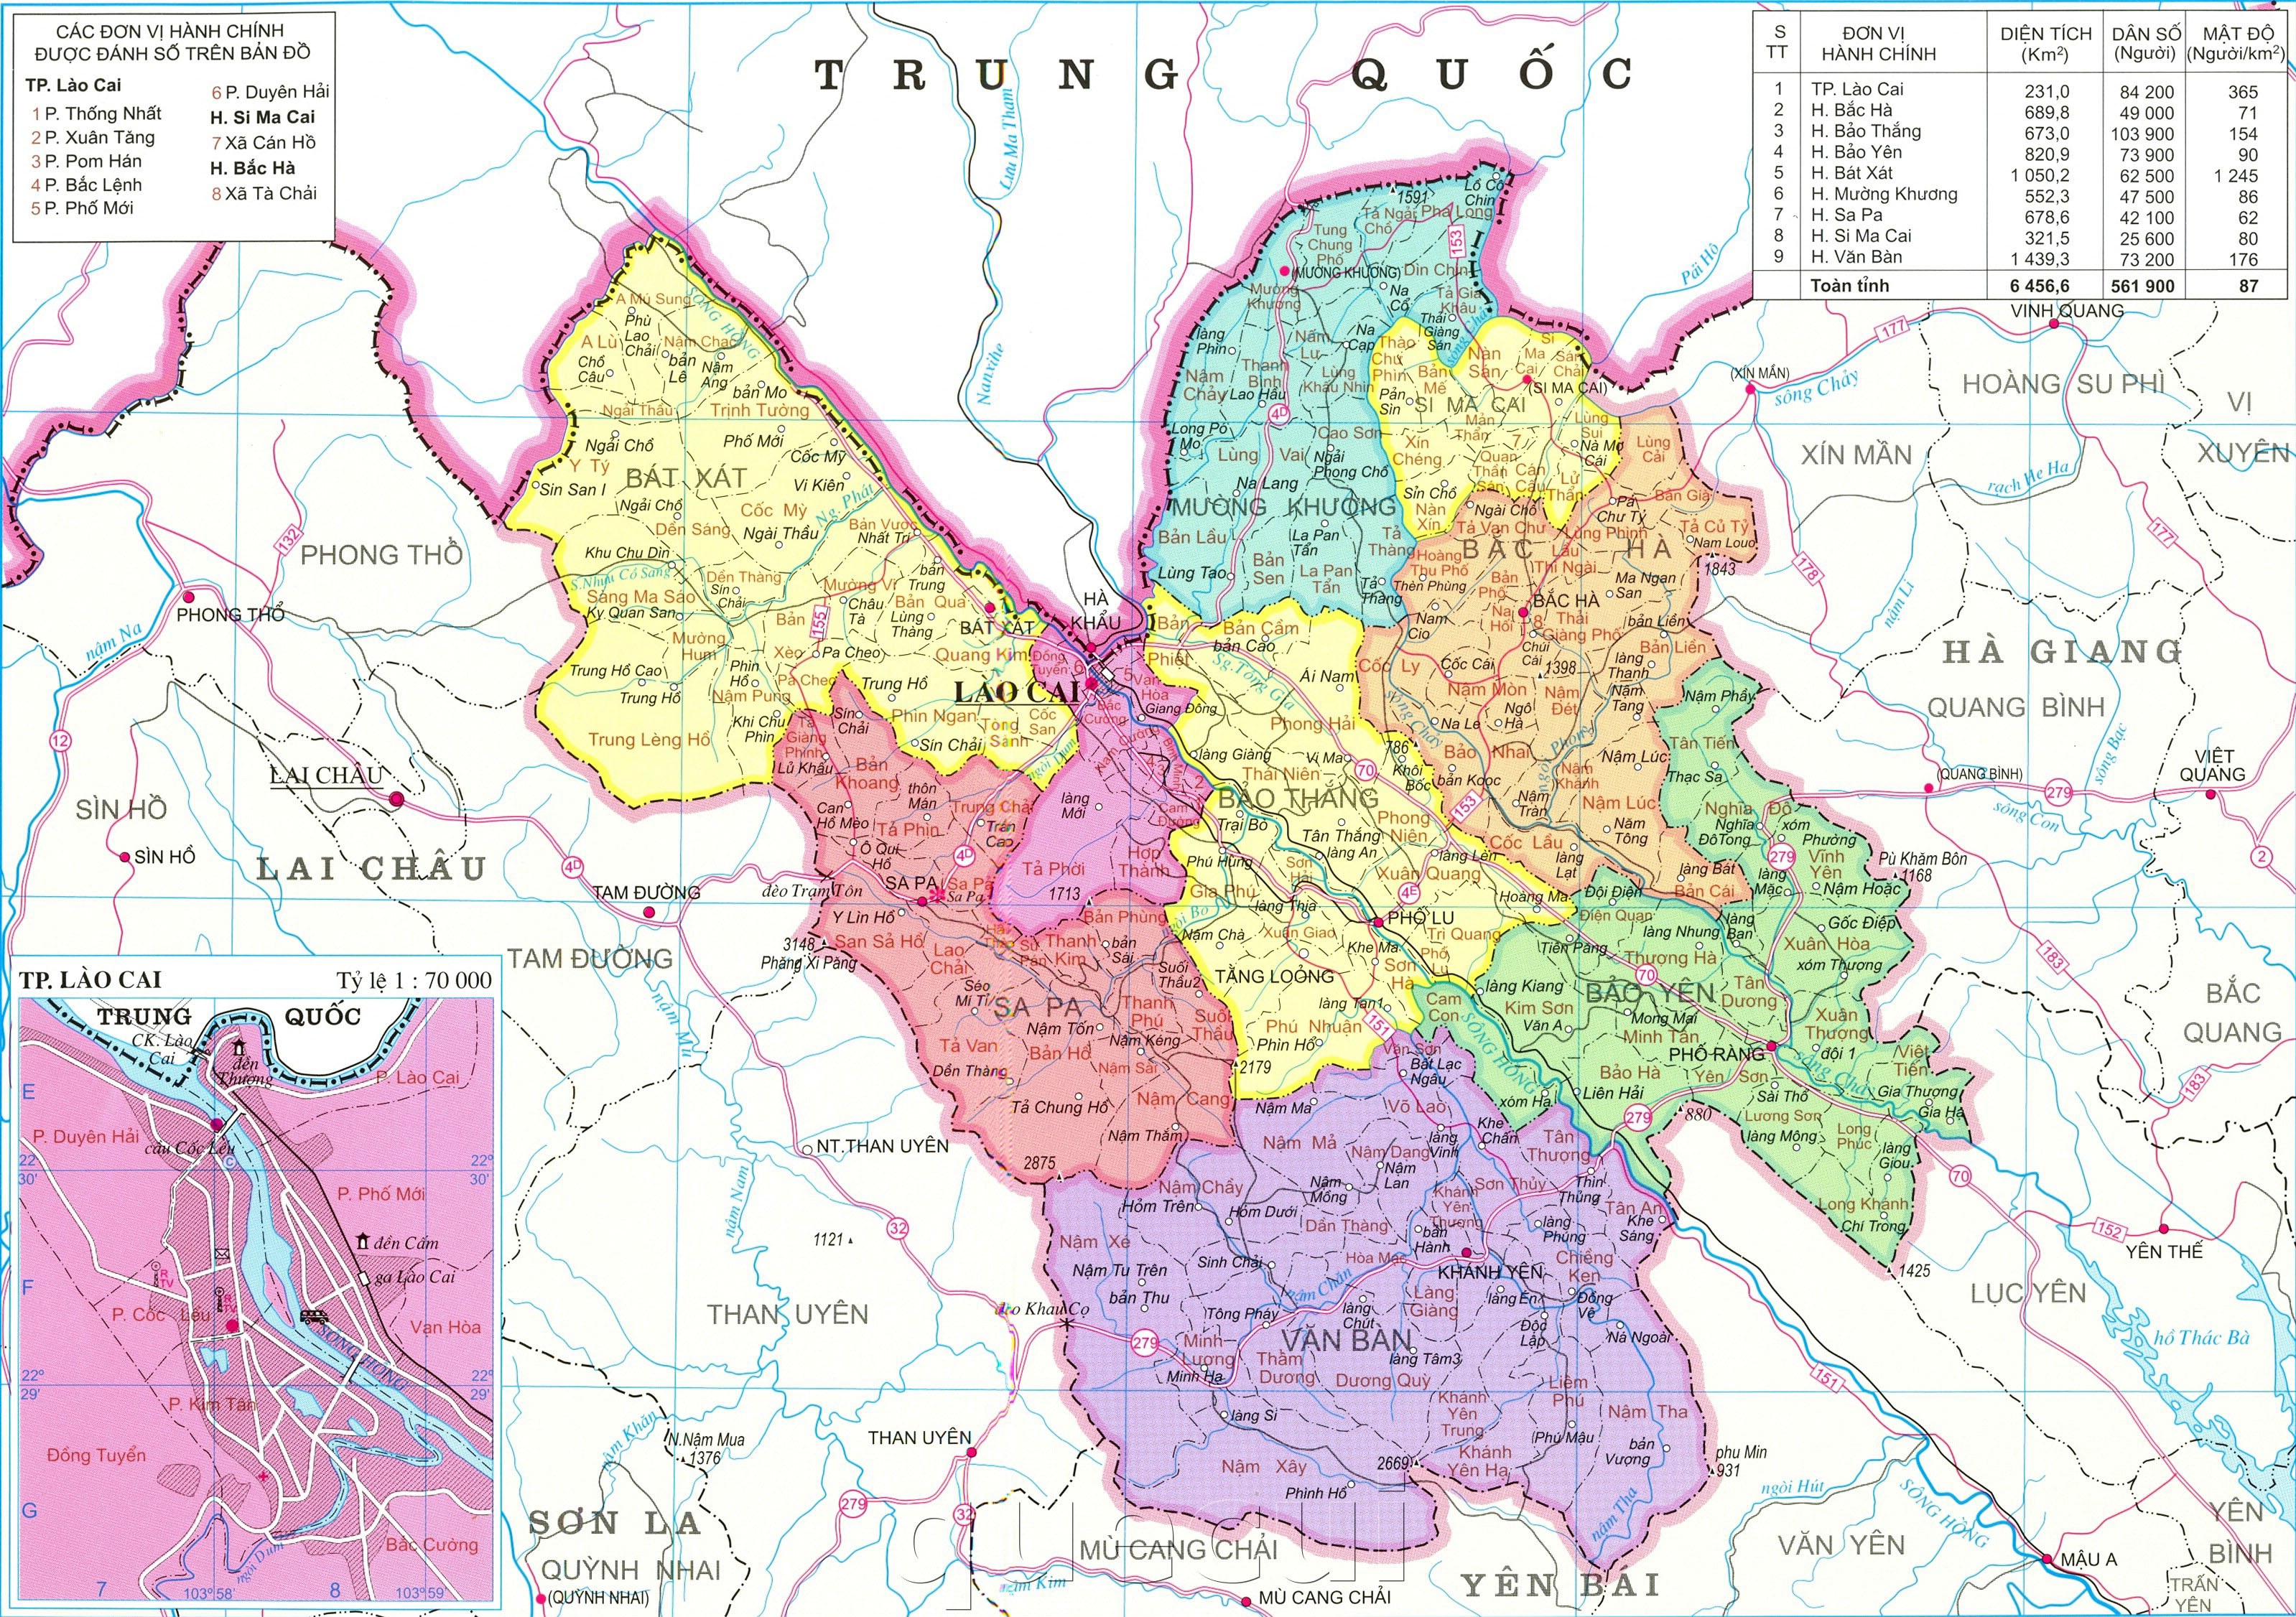 Bản đồ hành chính tỉnh Lào Cai mới nhất năm 2024 sẽ giúp bạn hiểu rõ hơn về các đơn vị hành chính thuộc tỉnh Lào Cai. Cùng khám phá vùng đất này và khám phá những địa điểm hấp dẫn như Sapa, Fansipan, hay thác Bạc.